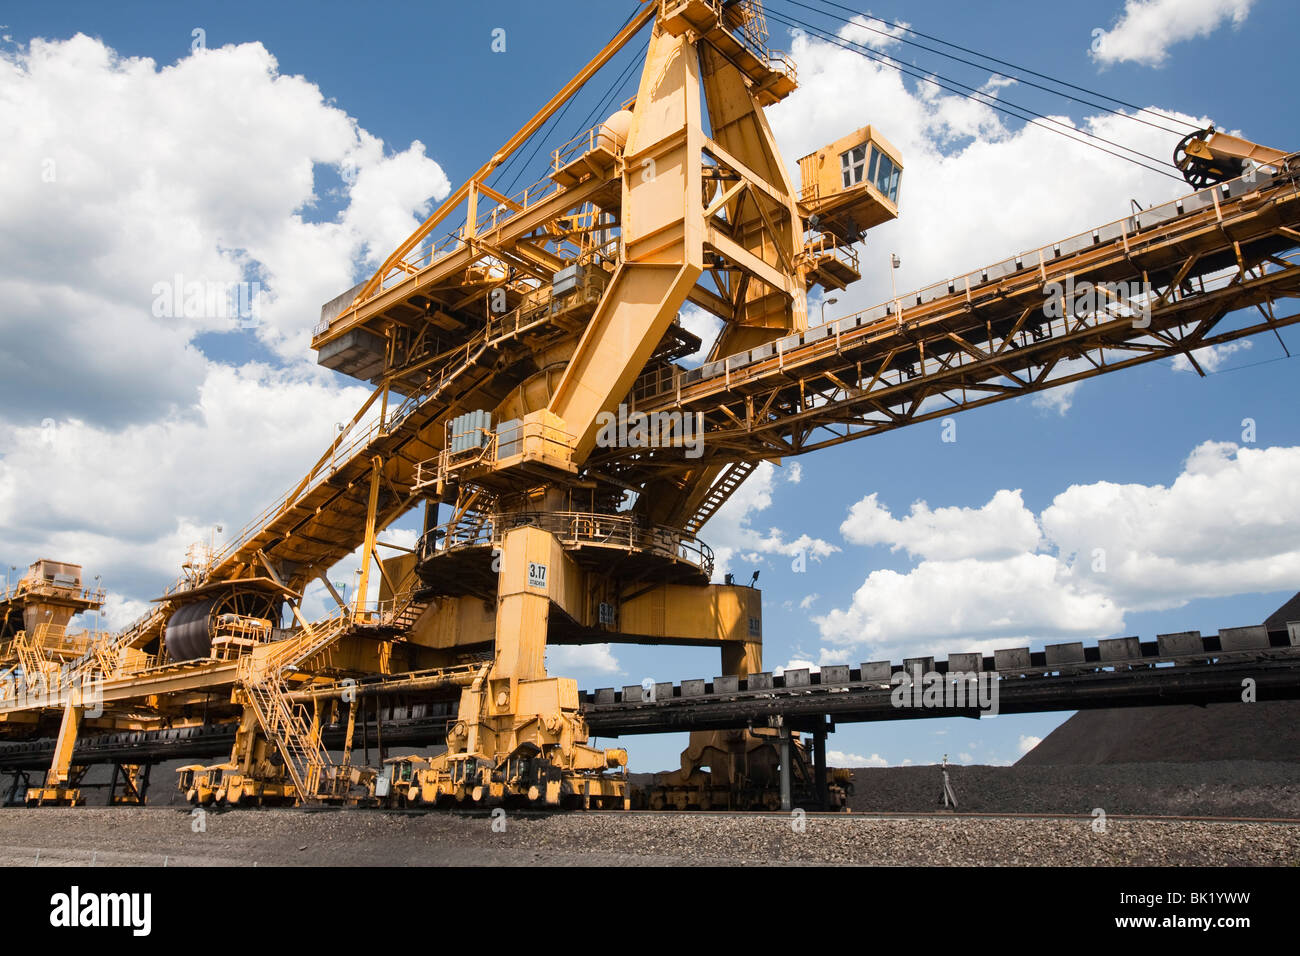 Kohle, beweglichen Maschinen am Port Waratah in Newcastle ist der weltweit größte Kohle Hafen. Australien. Stockfoto